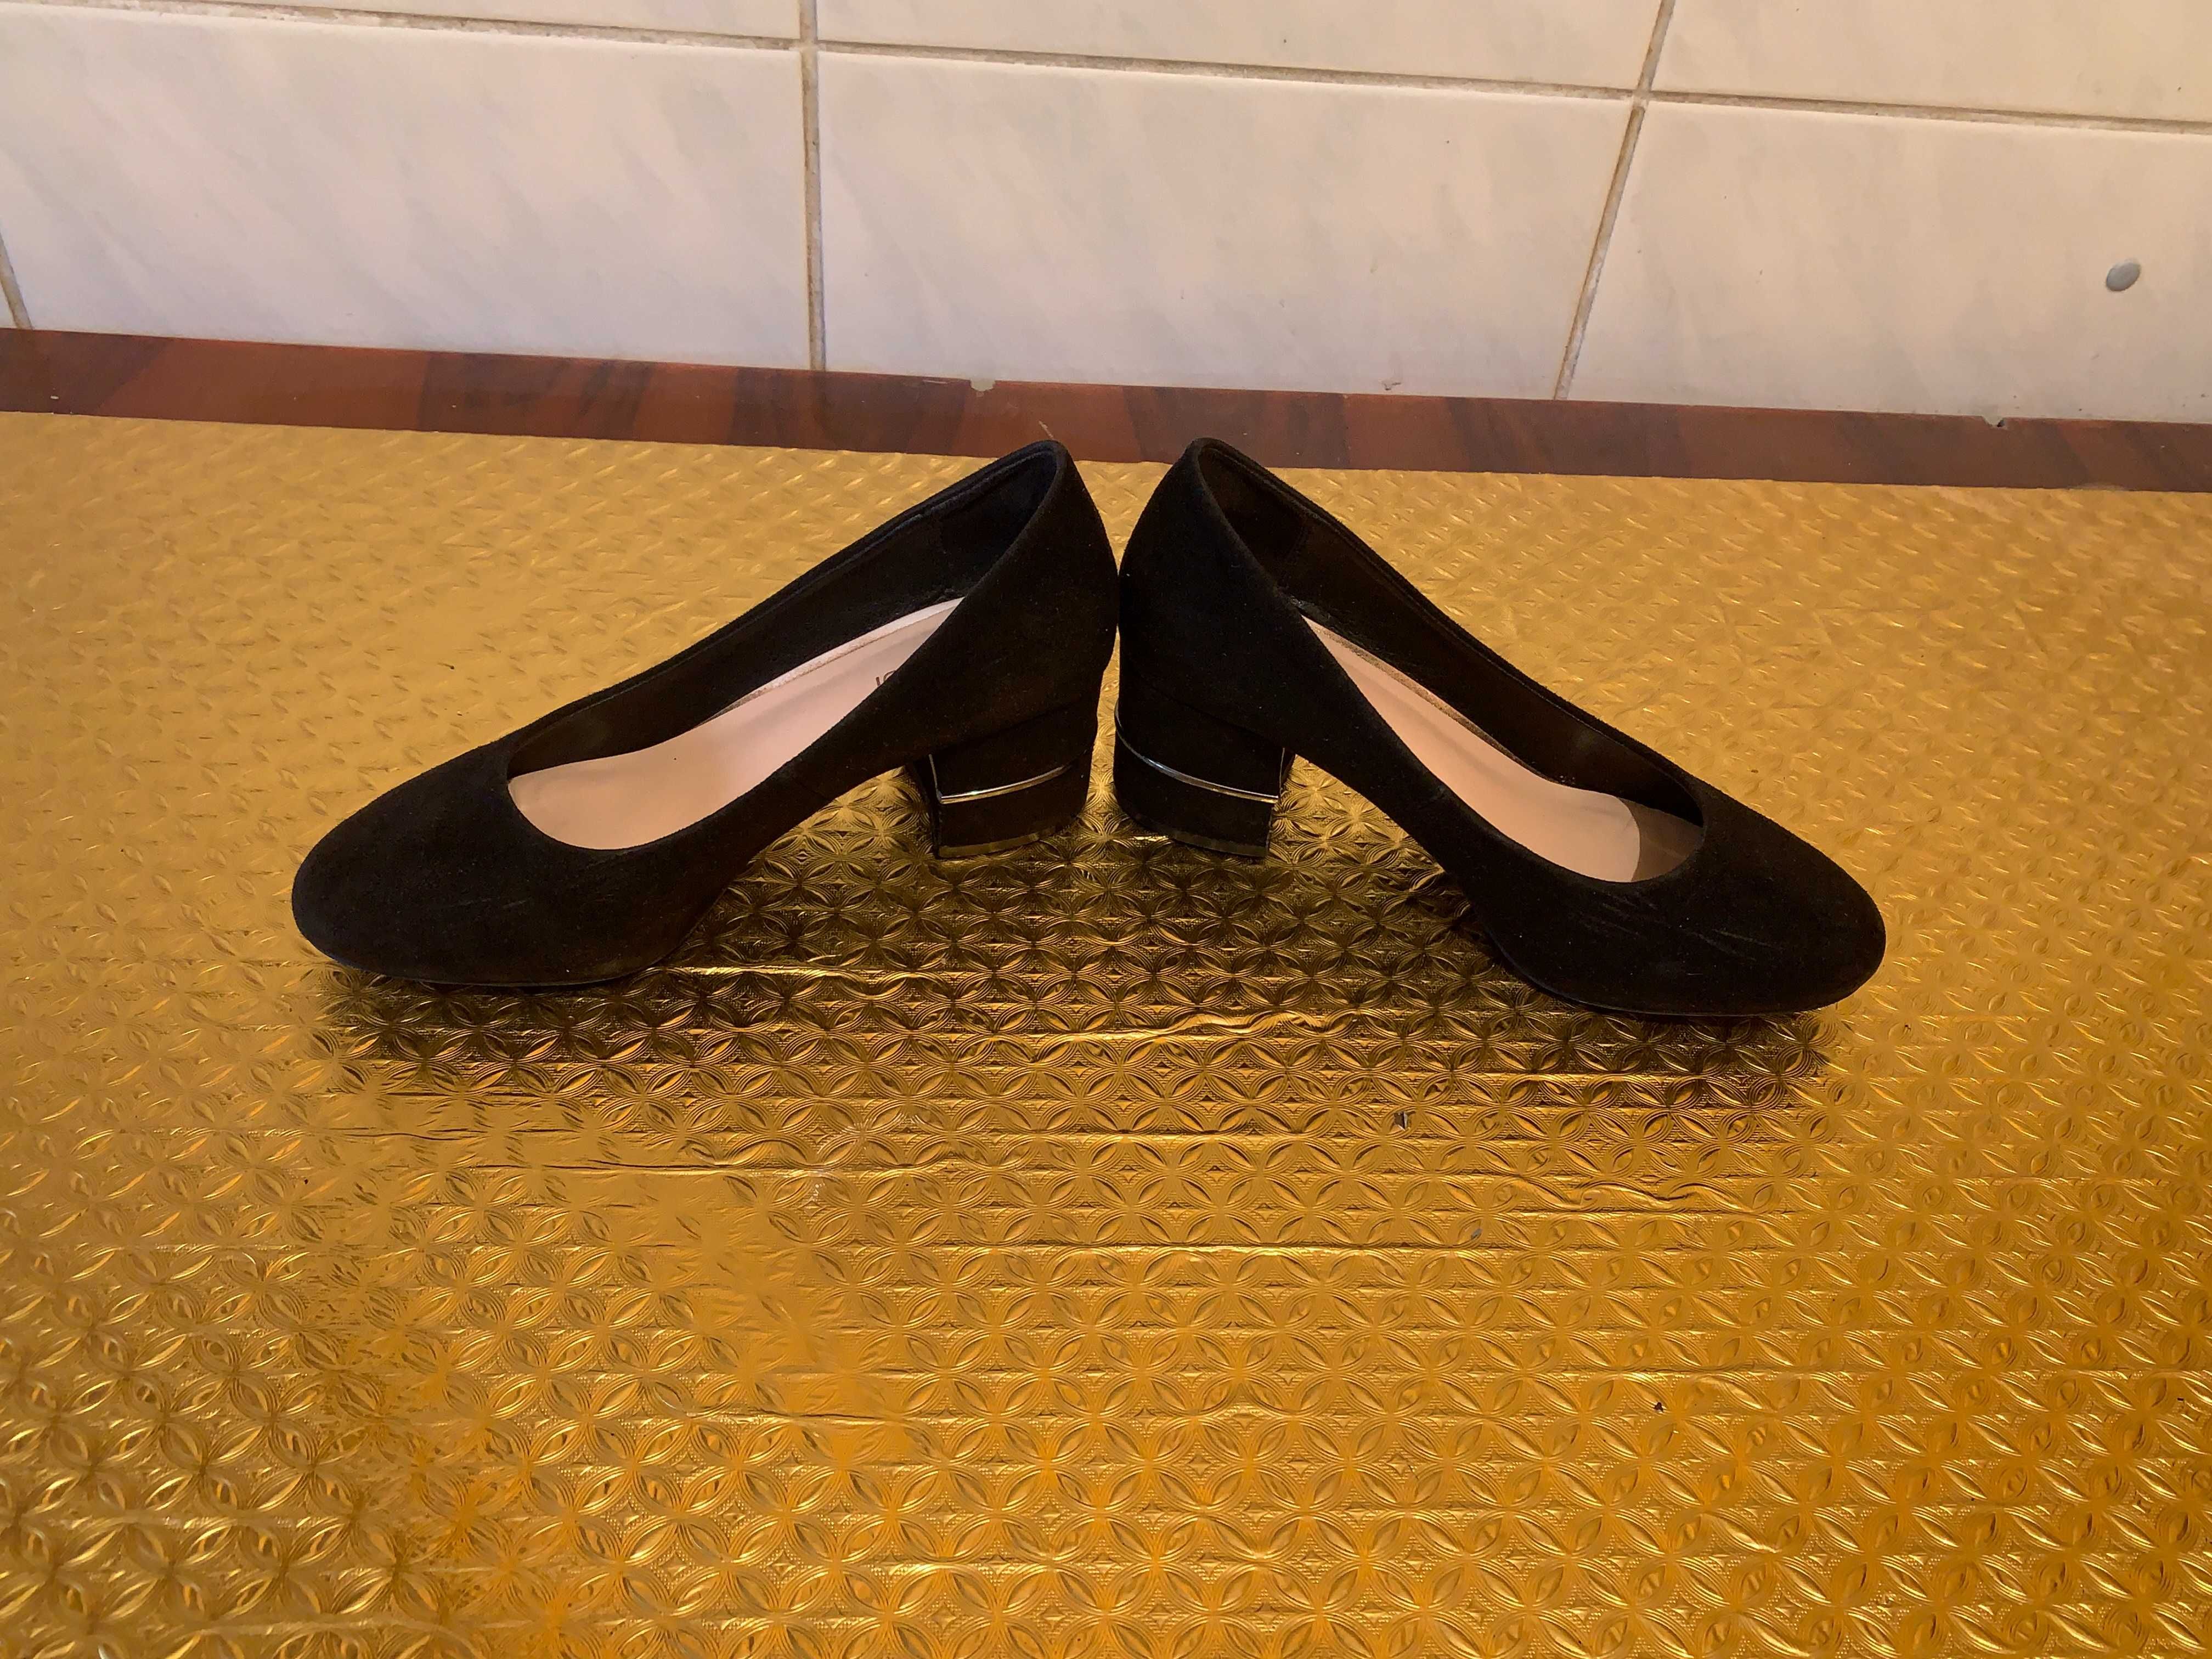 Продам туфли женские модел. из замши черного цвета (сделано в Италии)